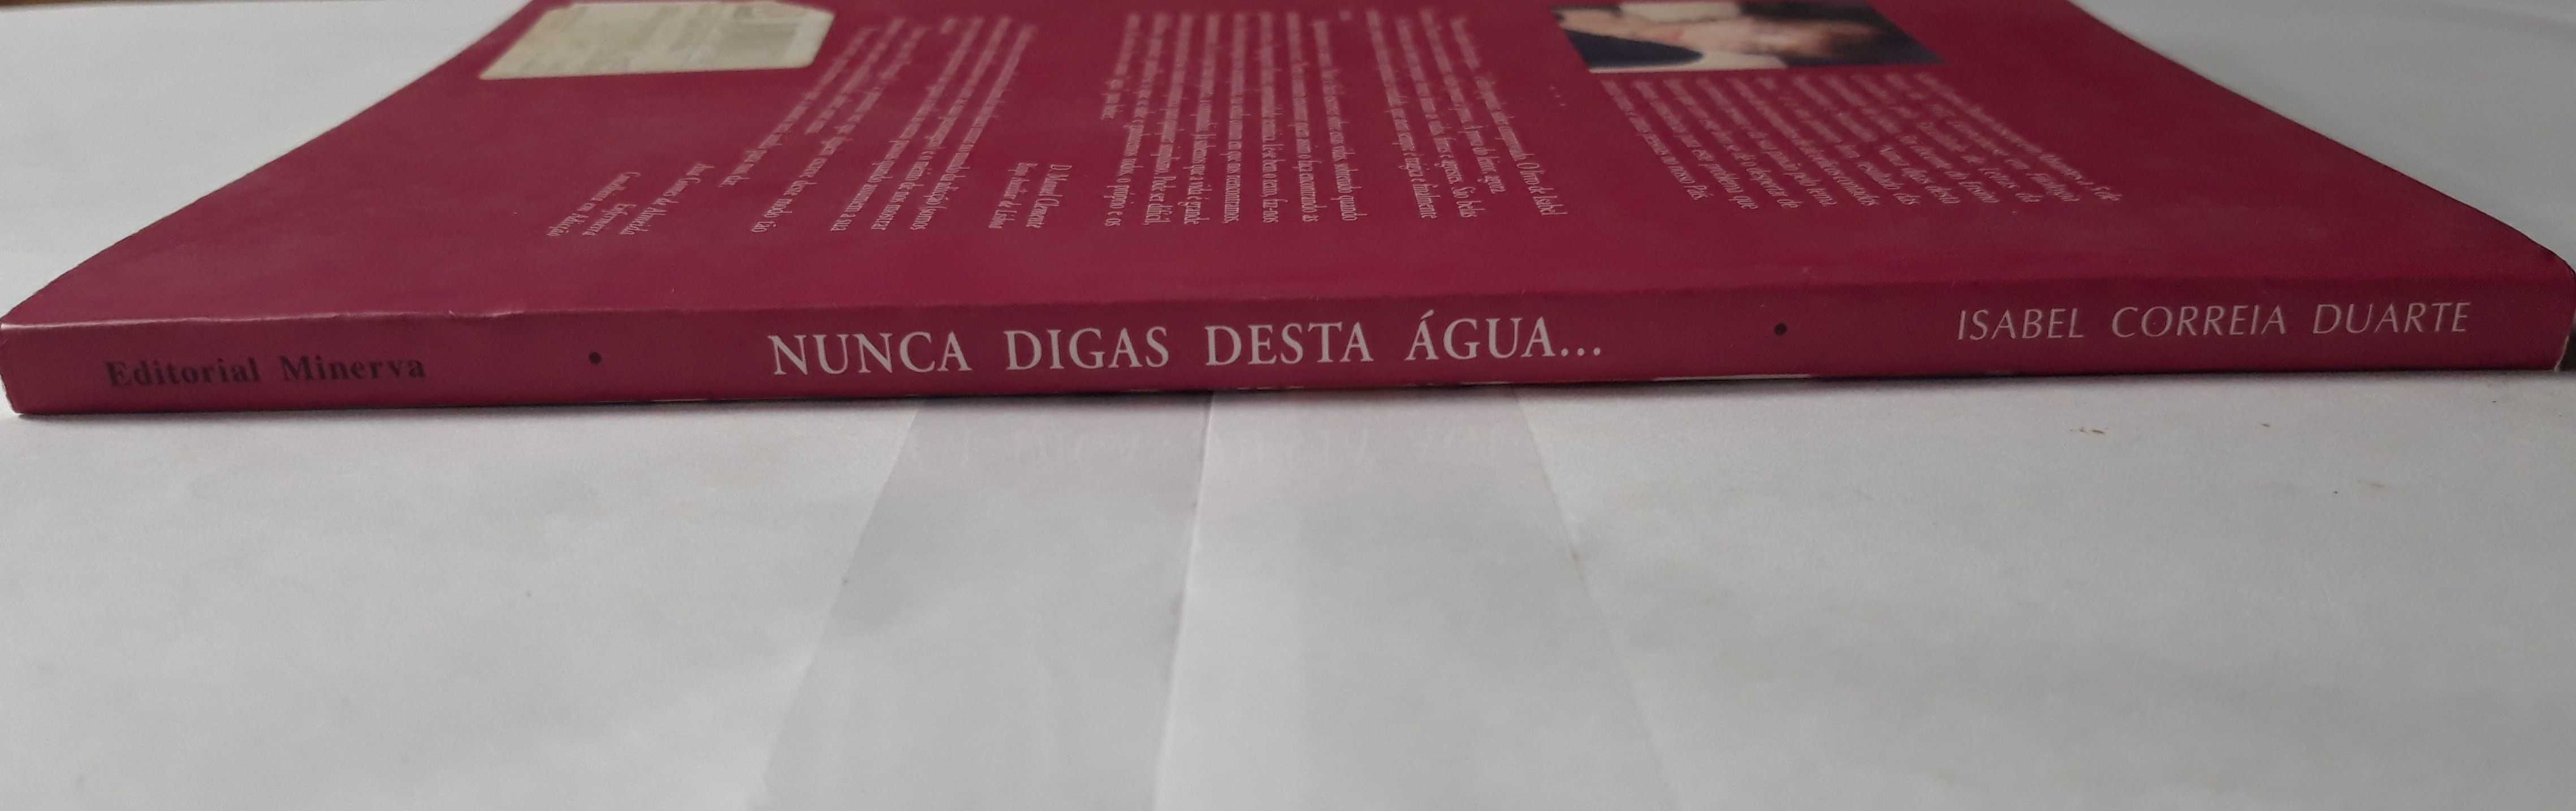 Livro Ref Par1- Isabel Correia Duarte - Nunca Digas Desta Água...